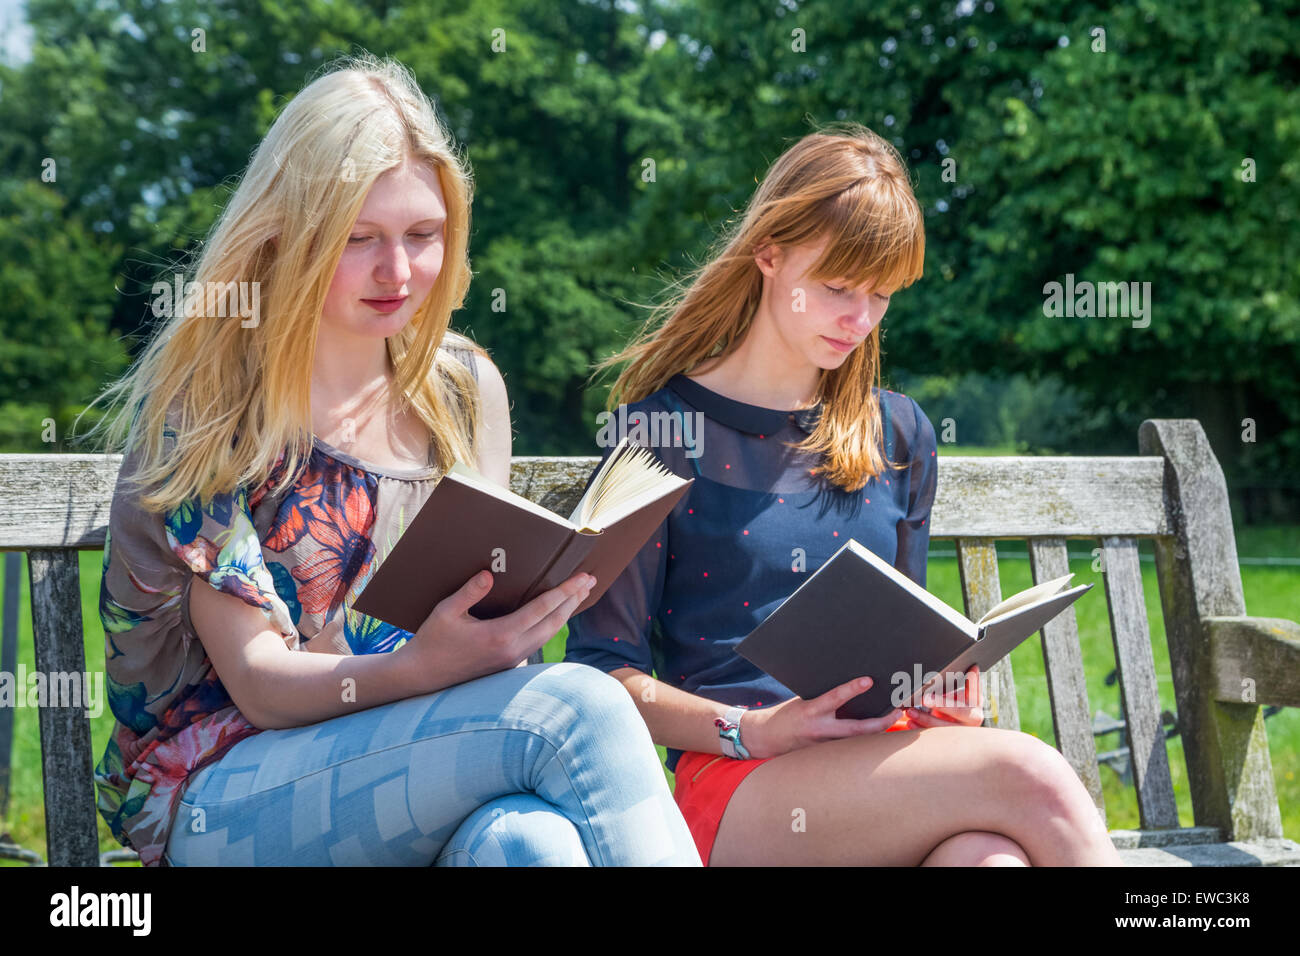 Zwei kaukasische Mädchen im Teenageralter Lesebücher auf Sitzbank in der grünen Natur Stockfoto